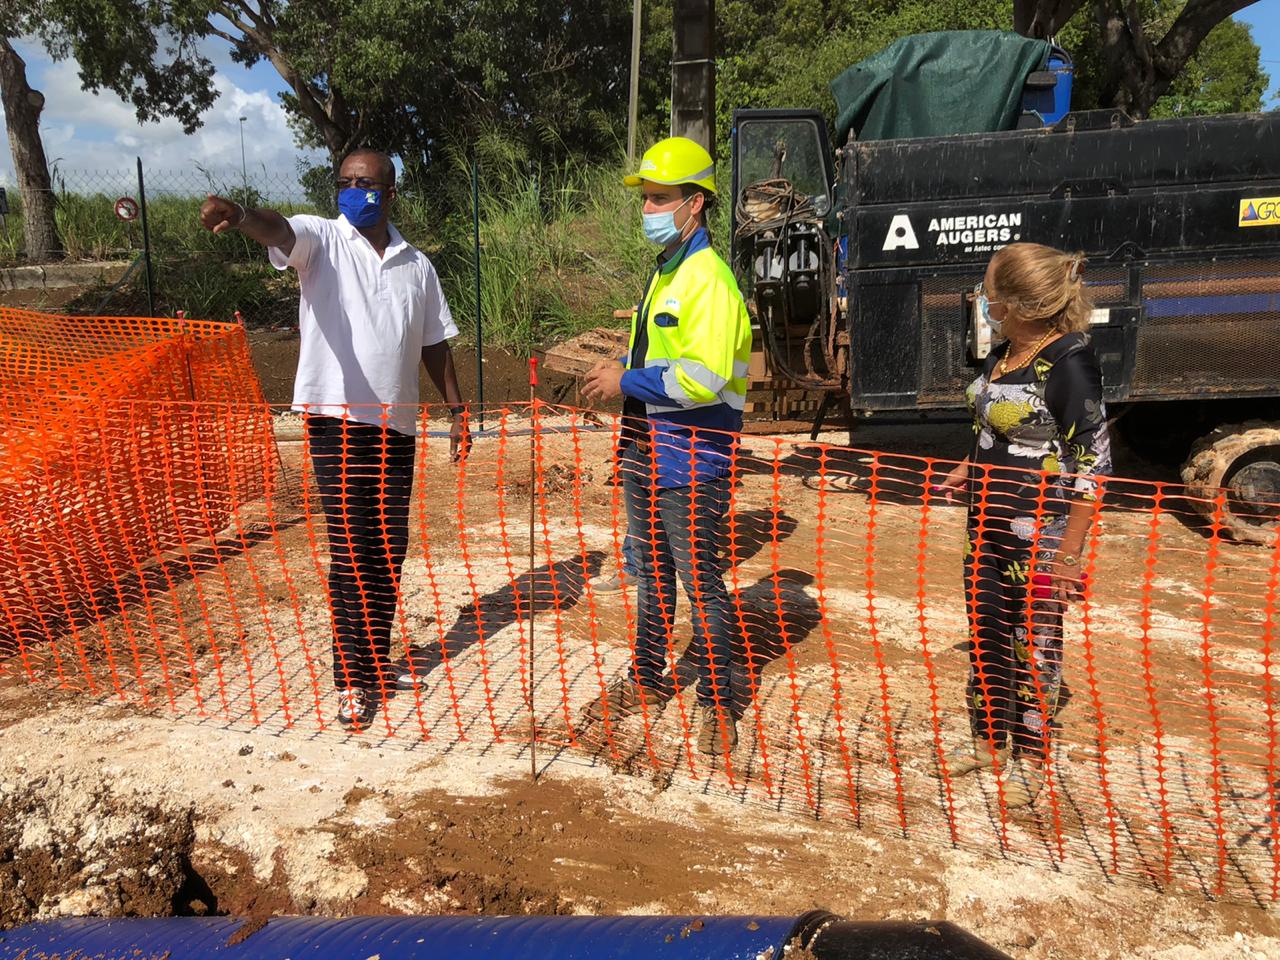     Ary Chalus visite des chantiers de rénovation de canalisations à Baie-Mahault et au Gosier

